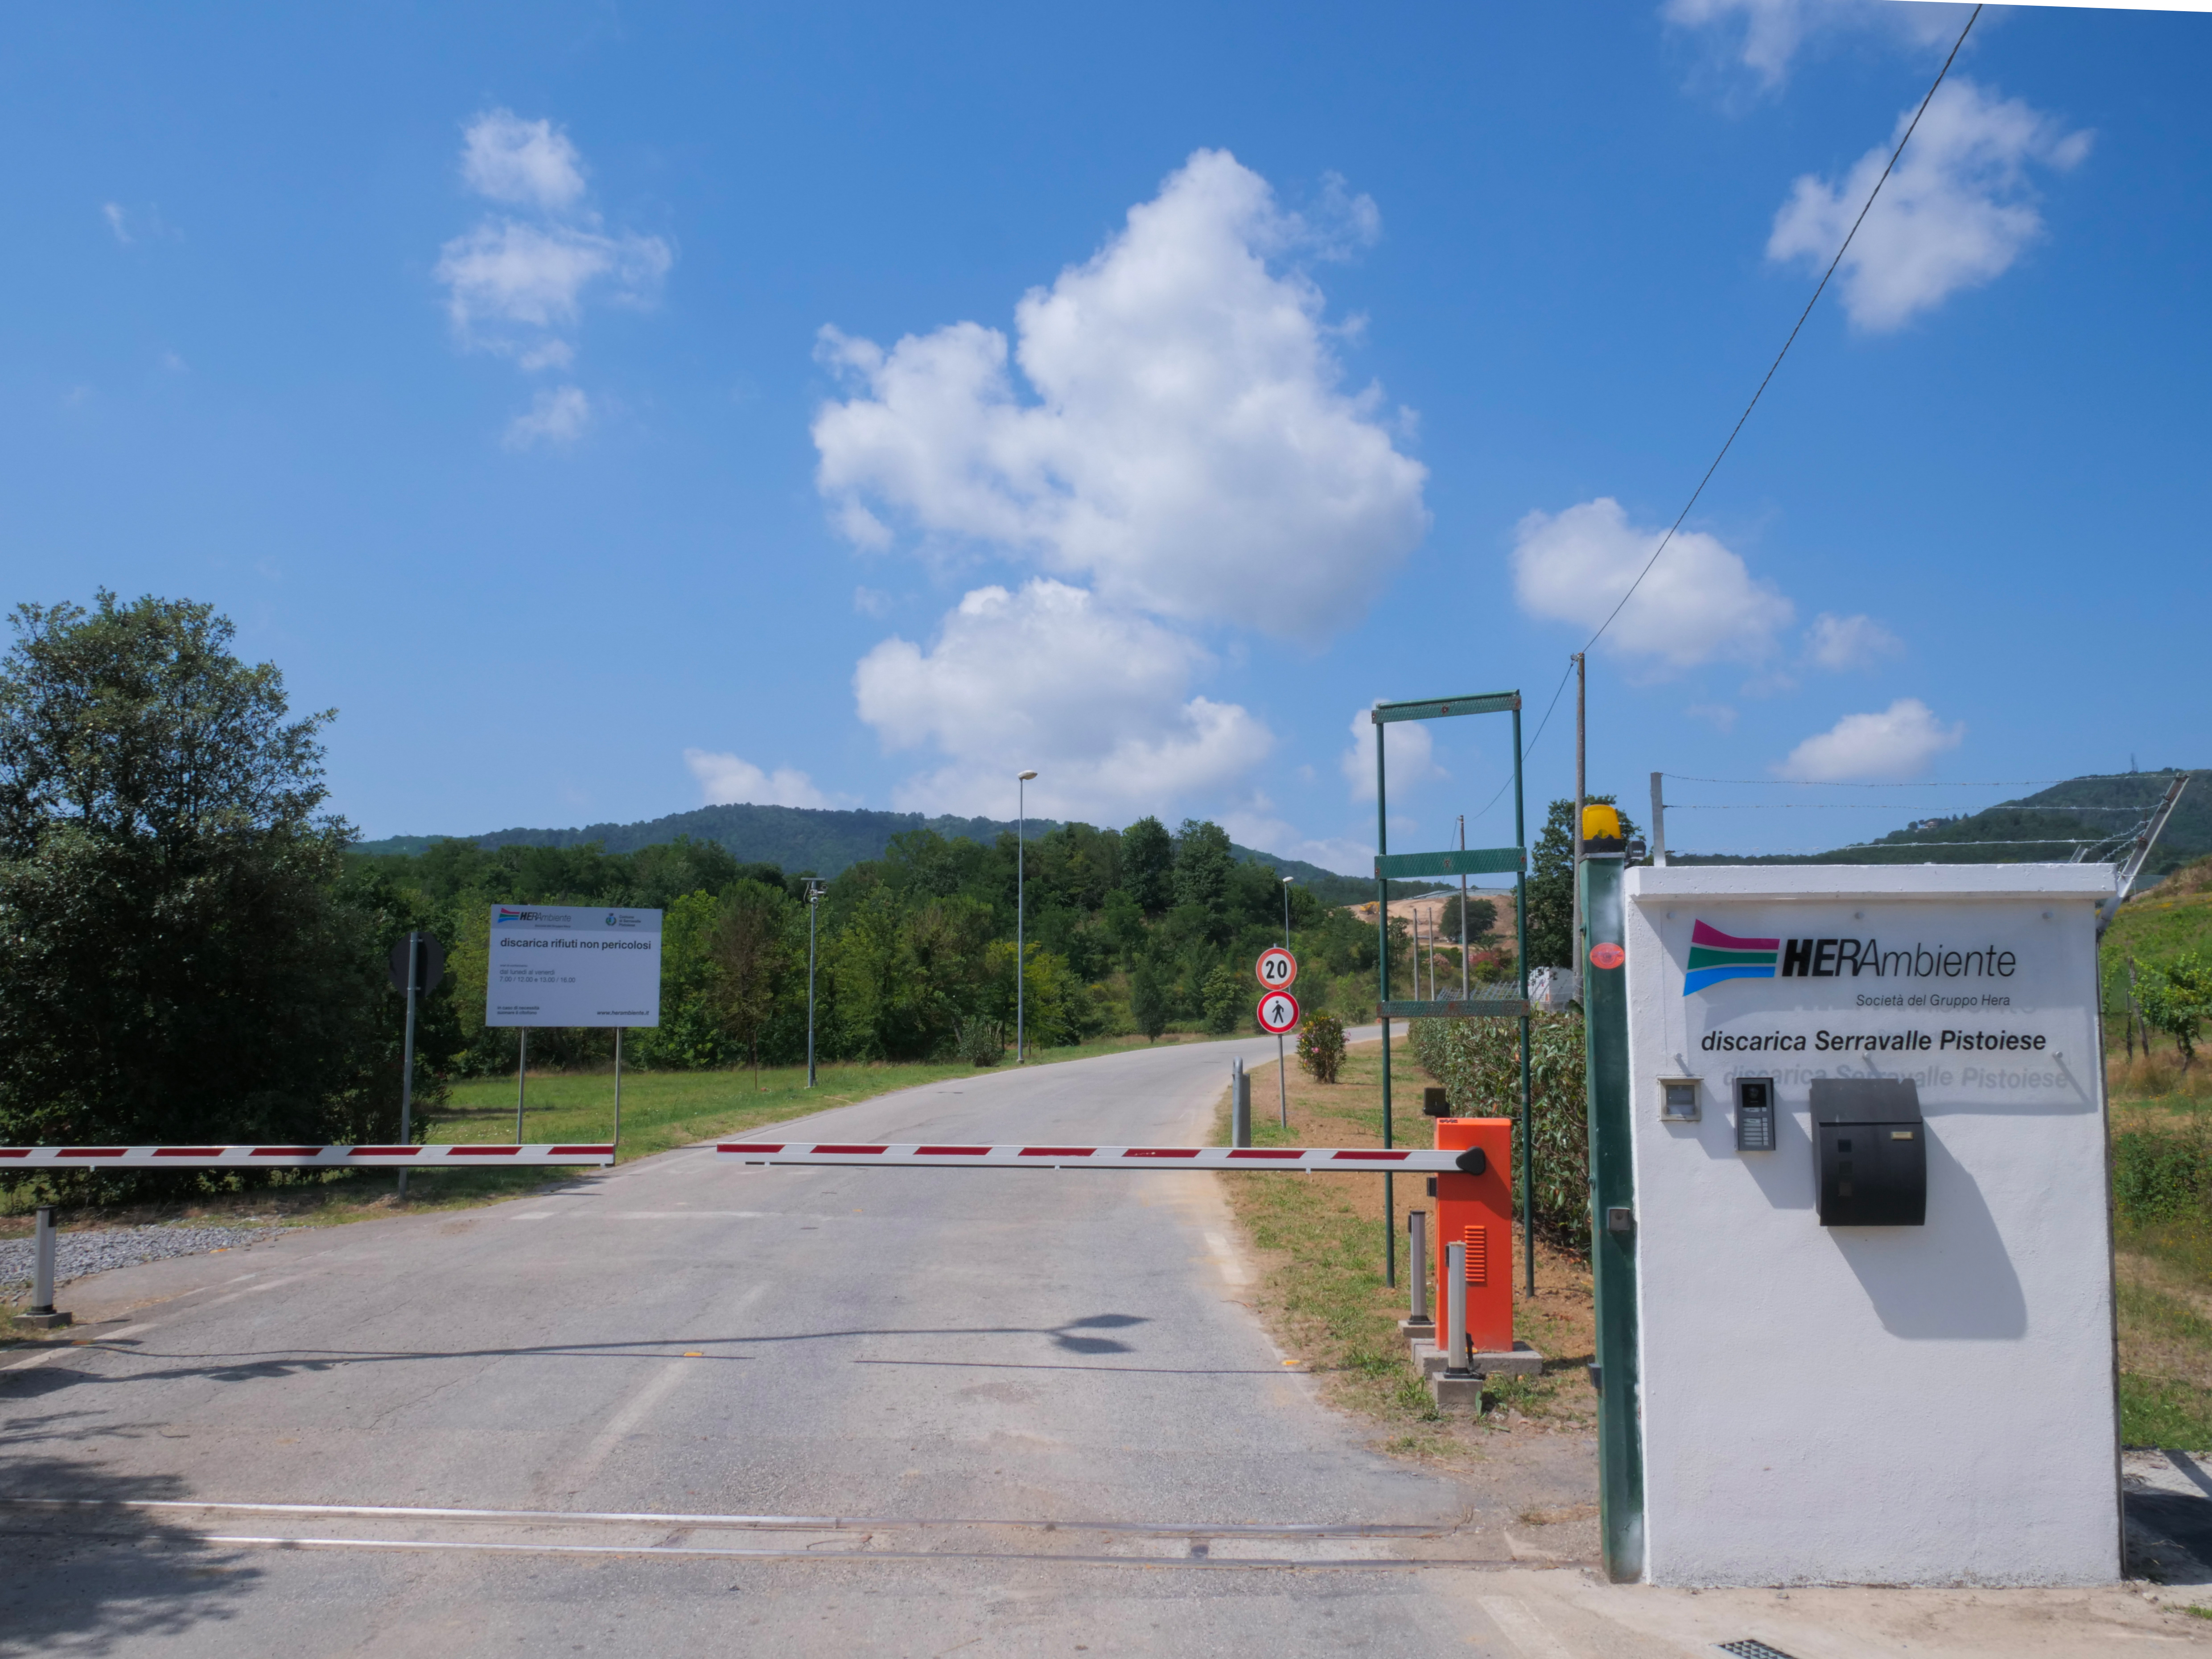 Entrance of Landfill in Serravalle Pistoiese (Pistoia)